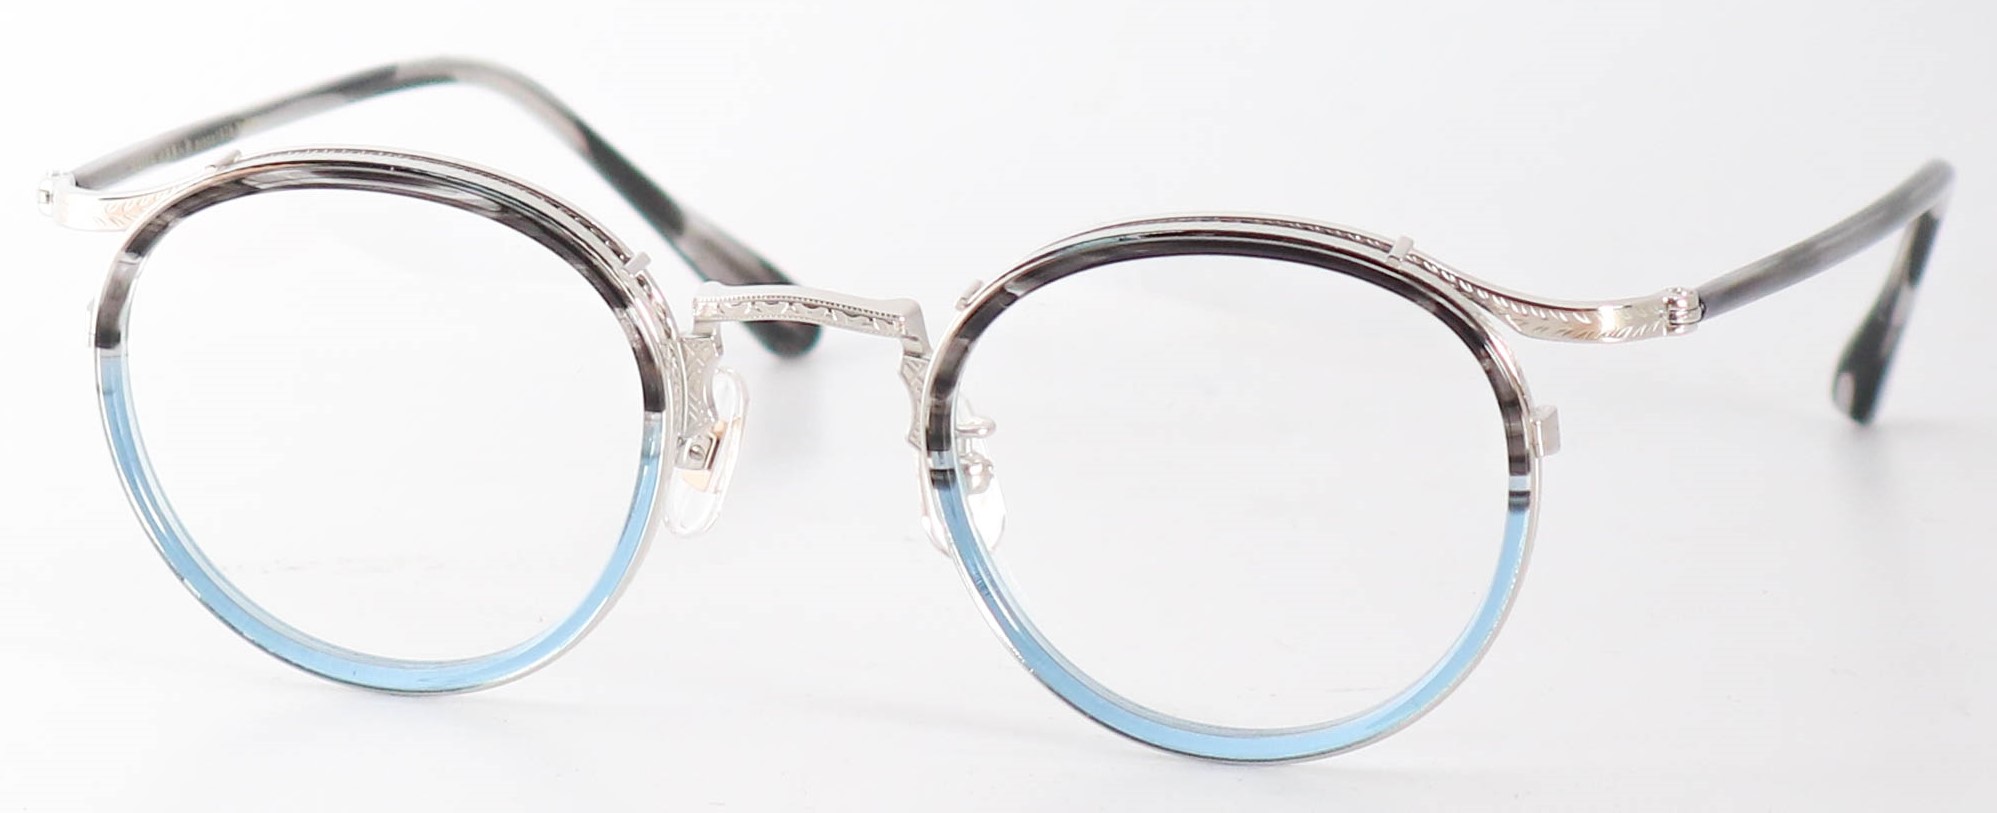 眼鏡のカラータイプC-3 Gray-Sasa.Blue-Half/Silver